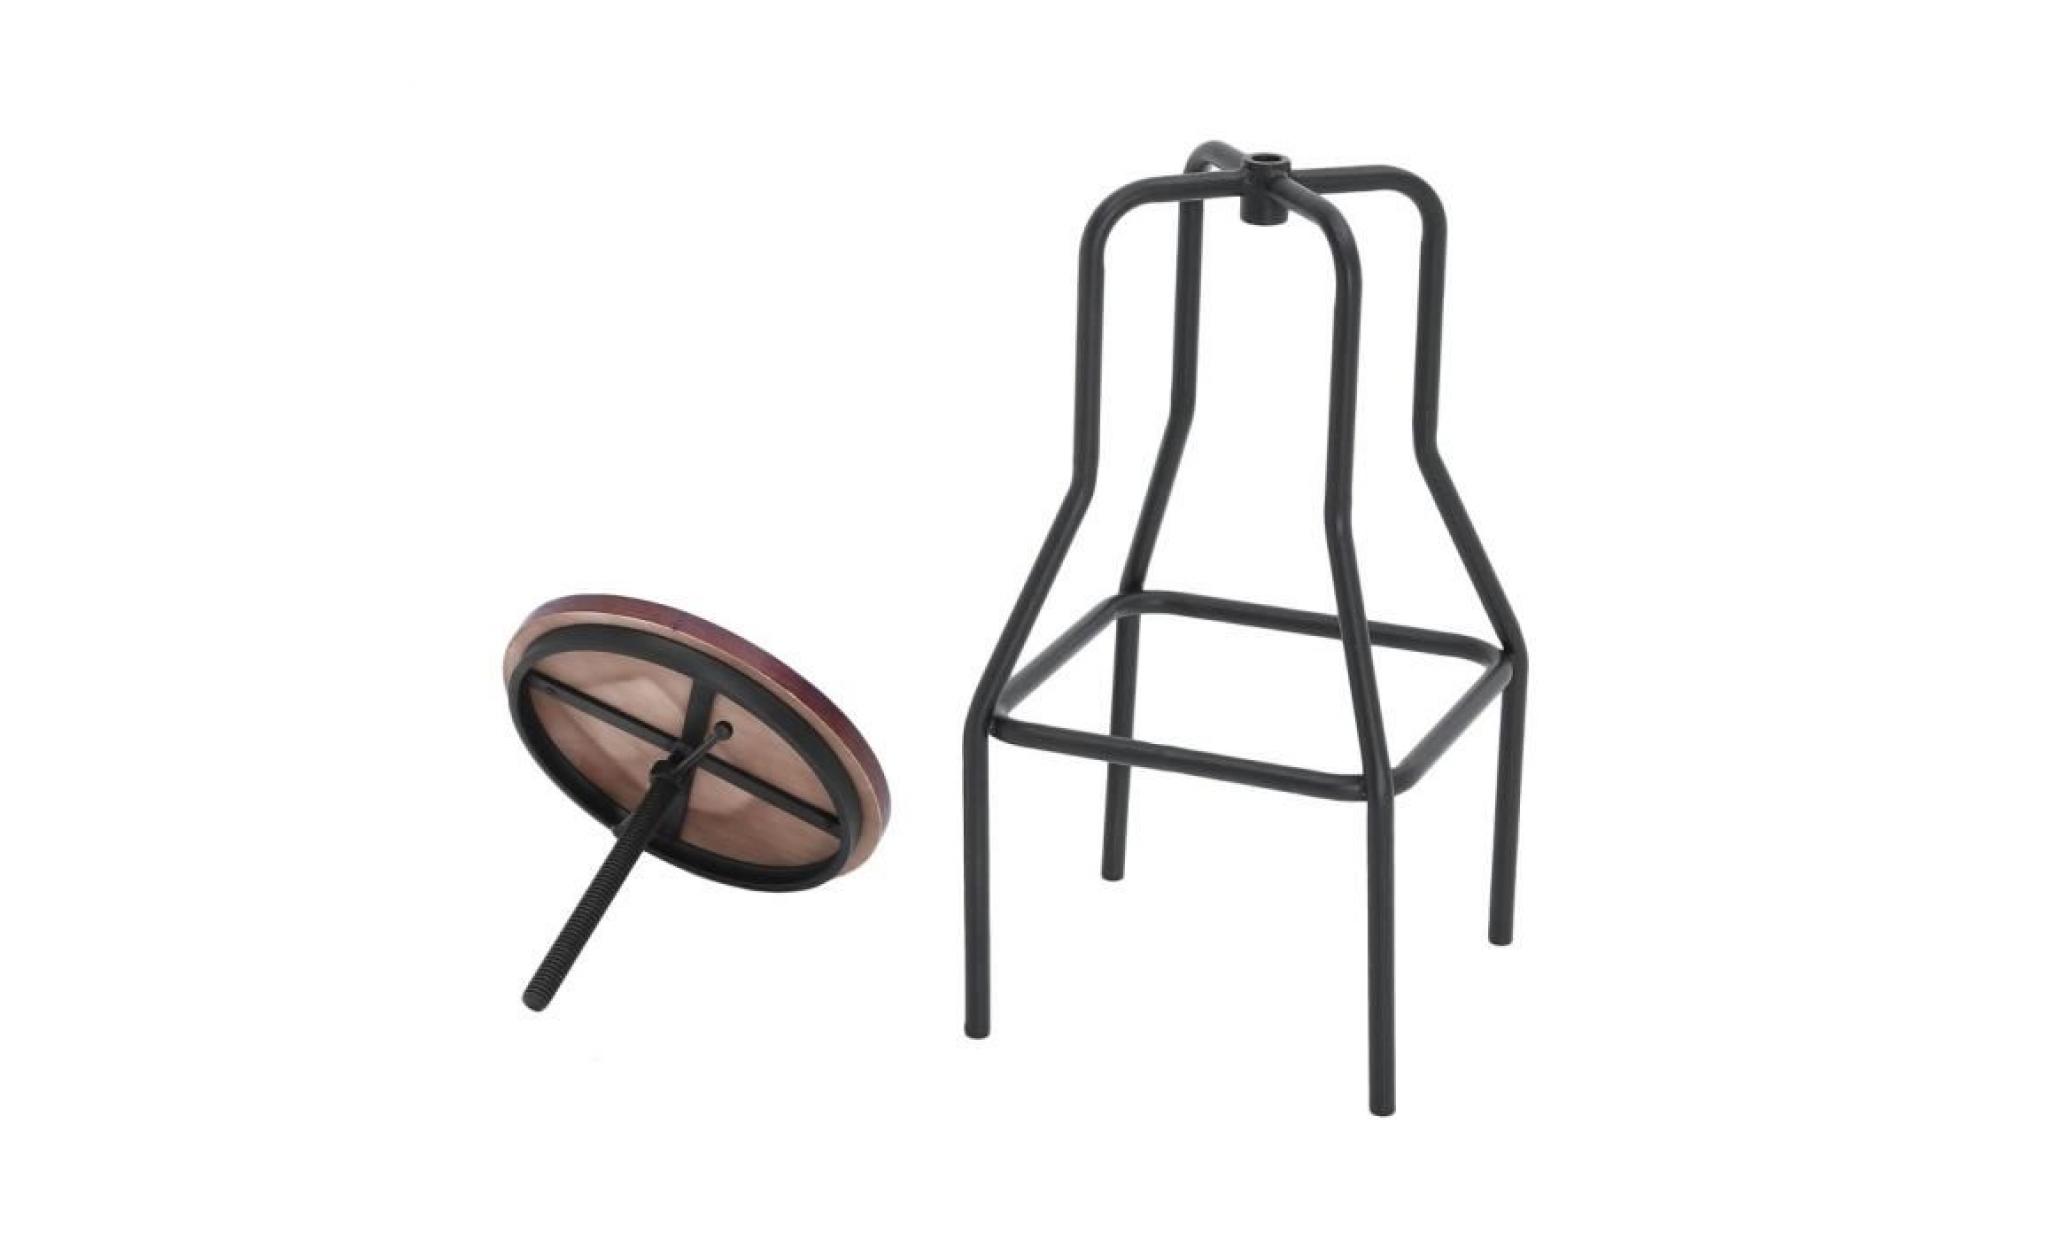 lot de 2 tabourets de bar chaises de bar vintage industriel hauteur réglable en bois métal pas cher